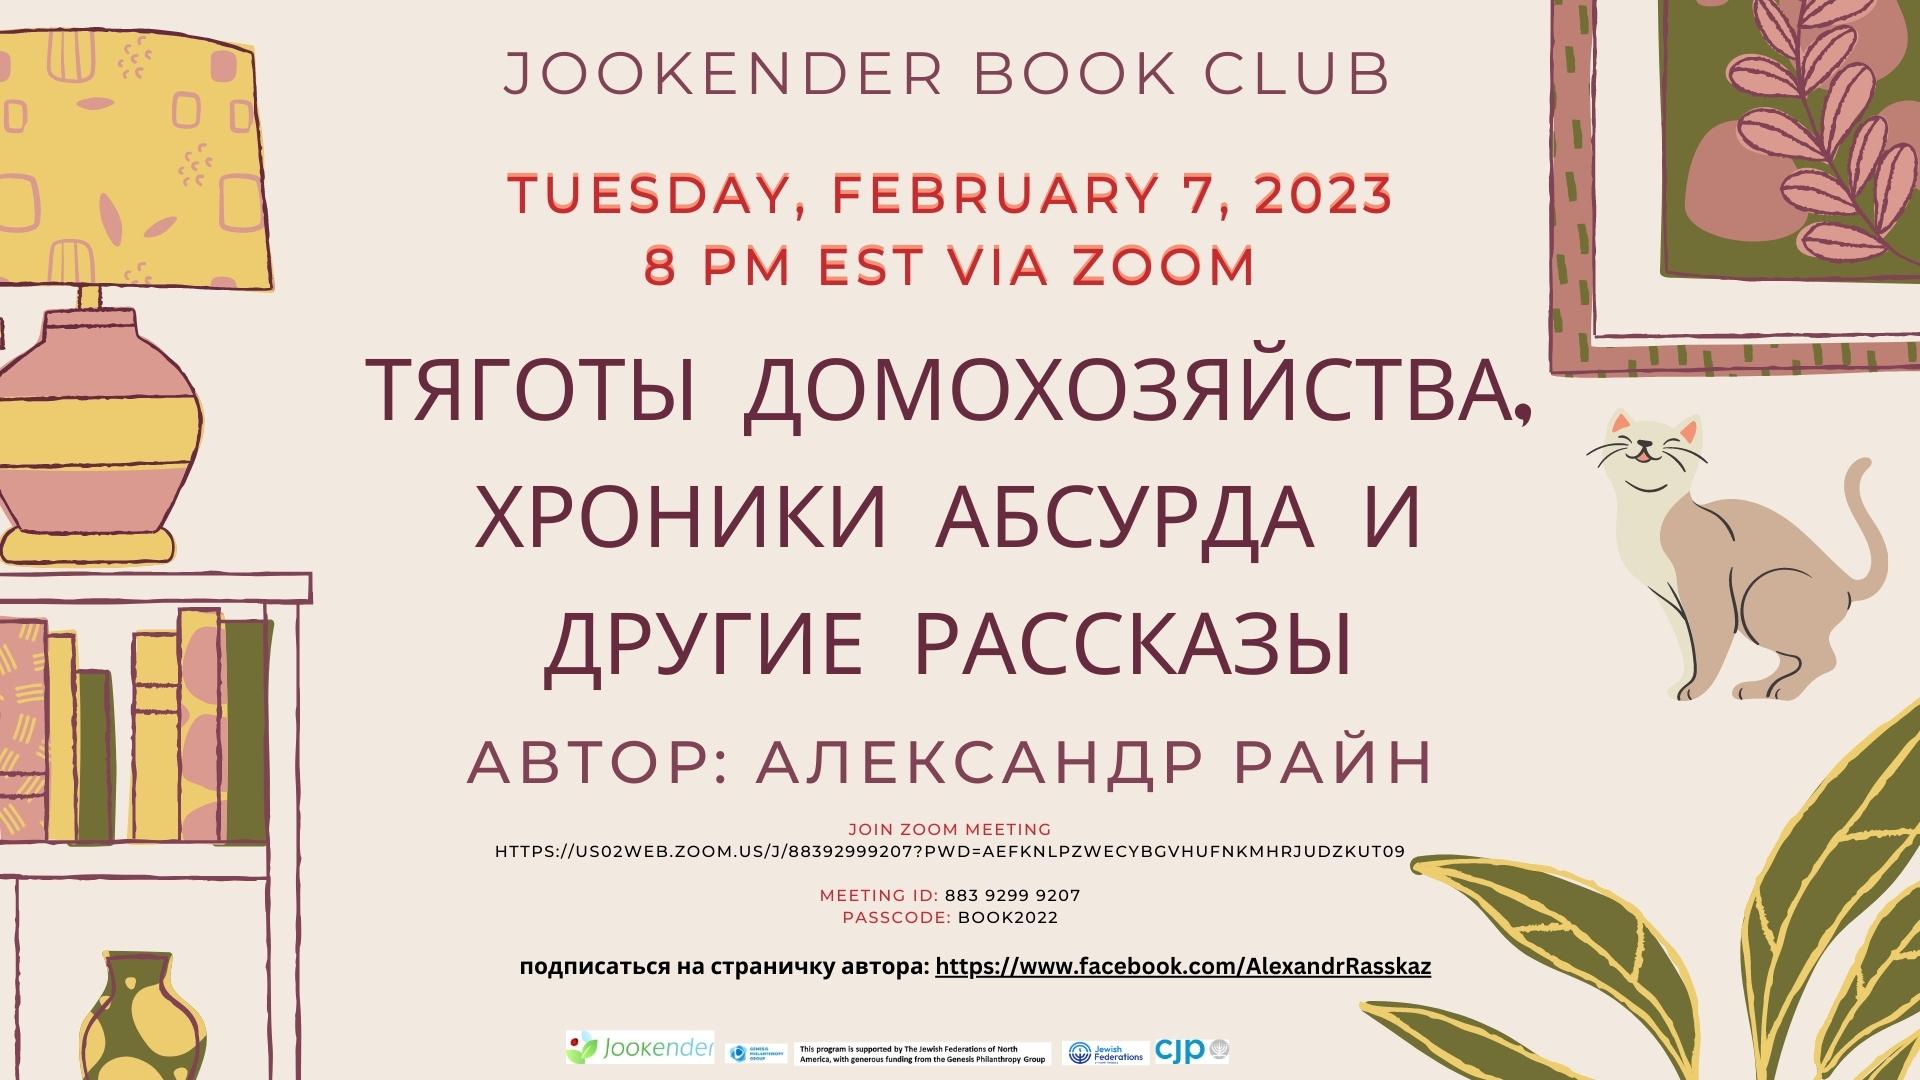 Тяготы домохозяйства, хроники абсурда и другие рассказы - Jookender Book Club